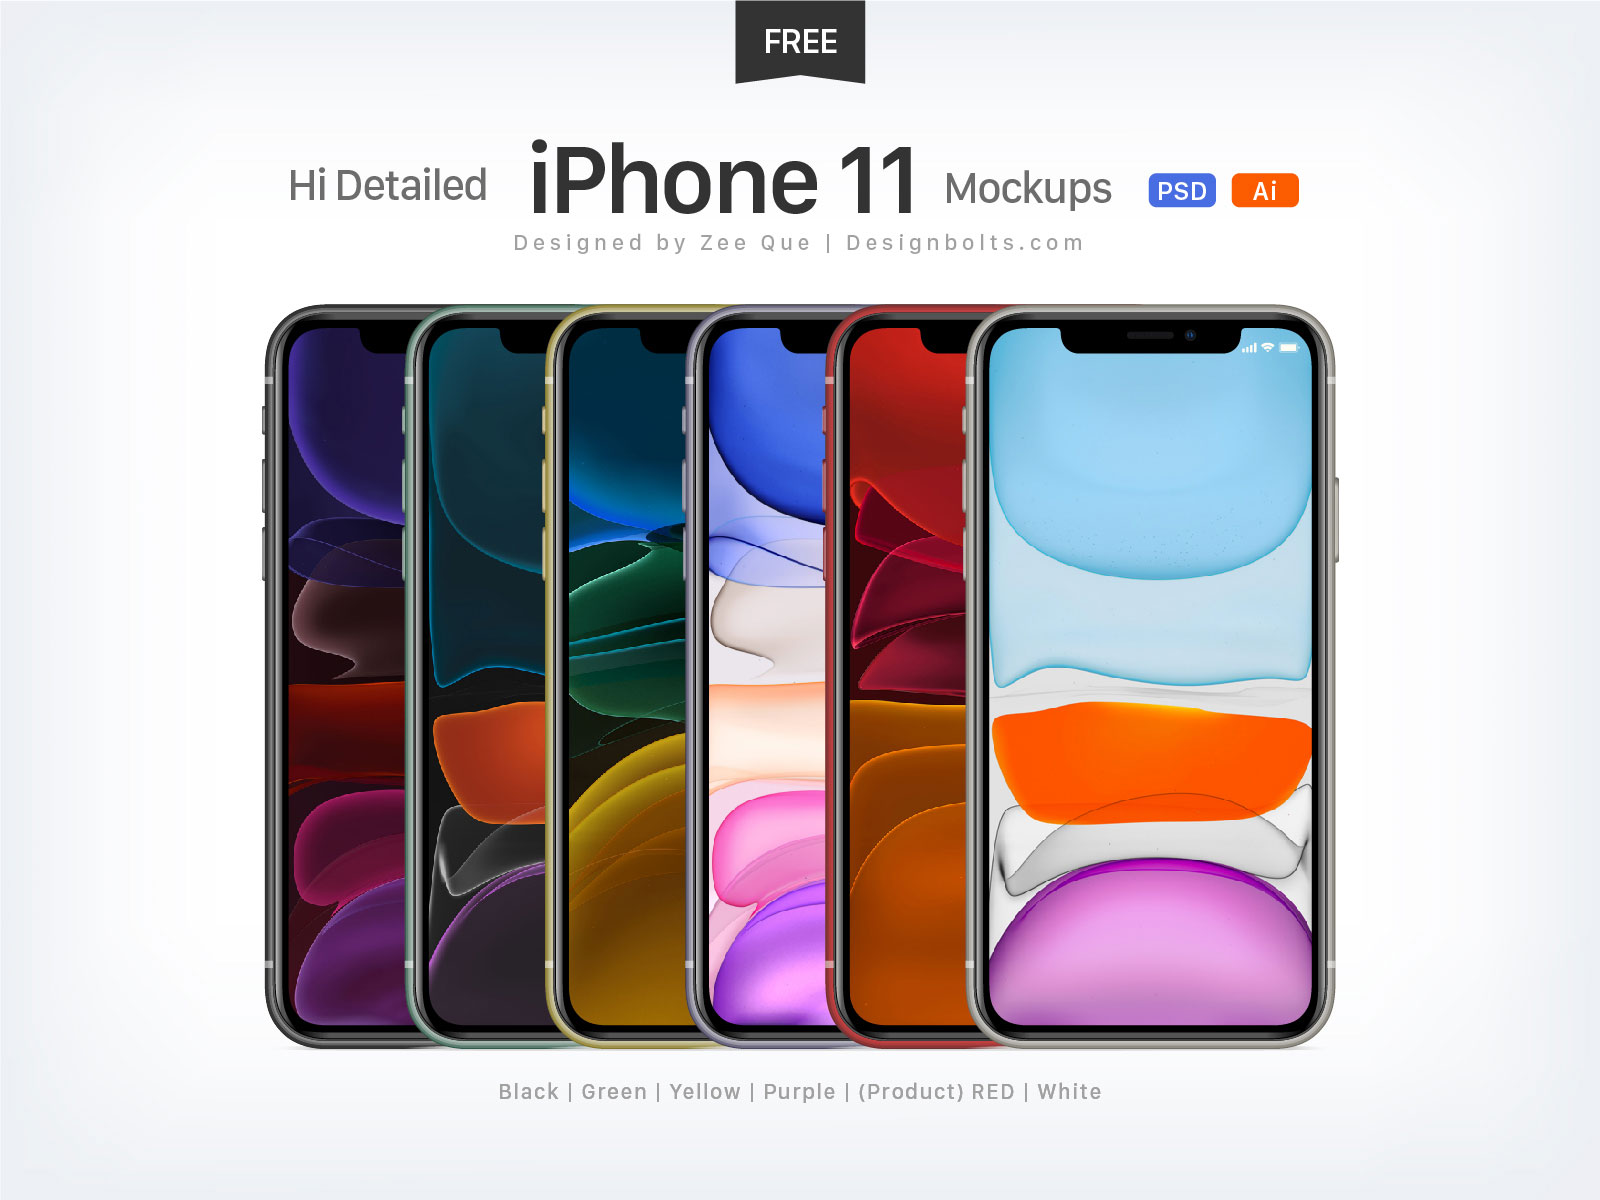 Free-iPhone-11-Mockup-PSD-Ai